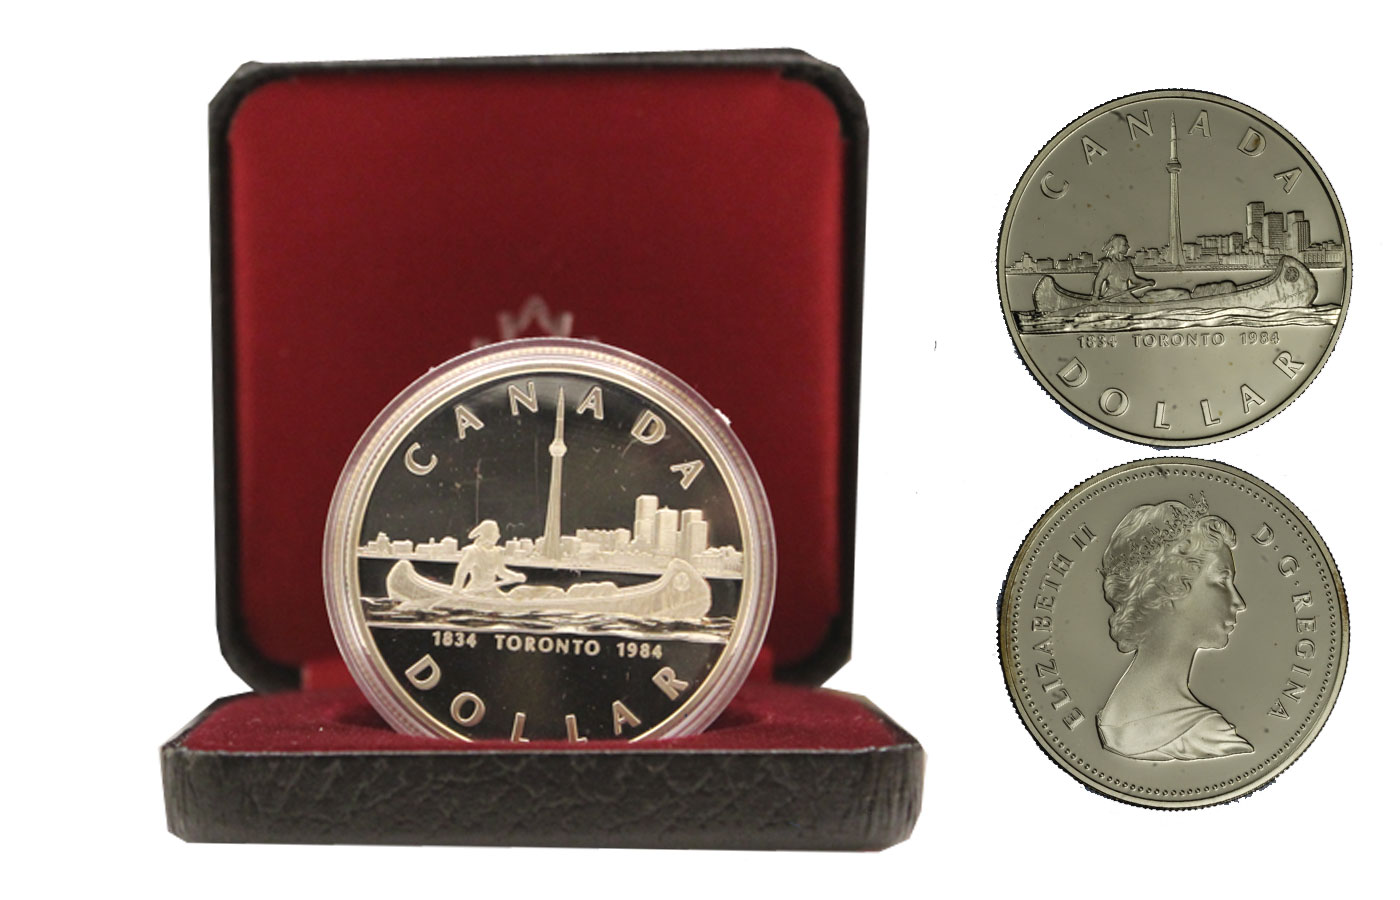 "150 Toronto" - Regina Elisabetta II - Dollaro 23,32 in arg. 500/ - In conf. originale